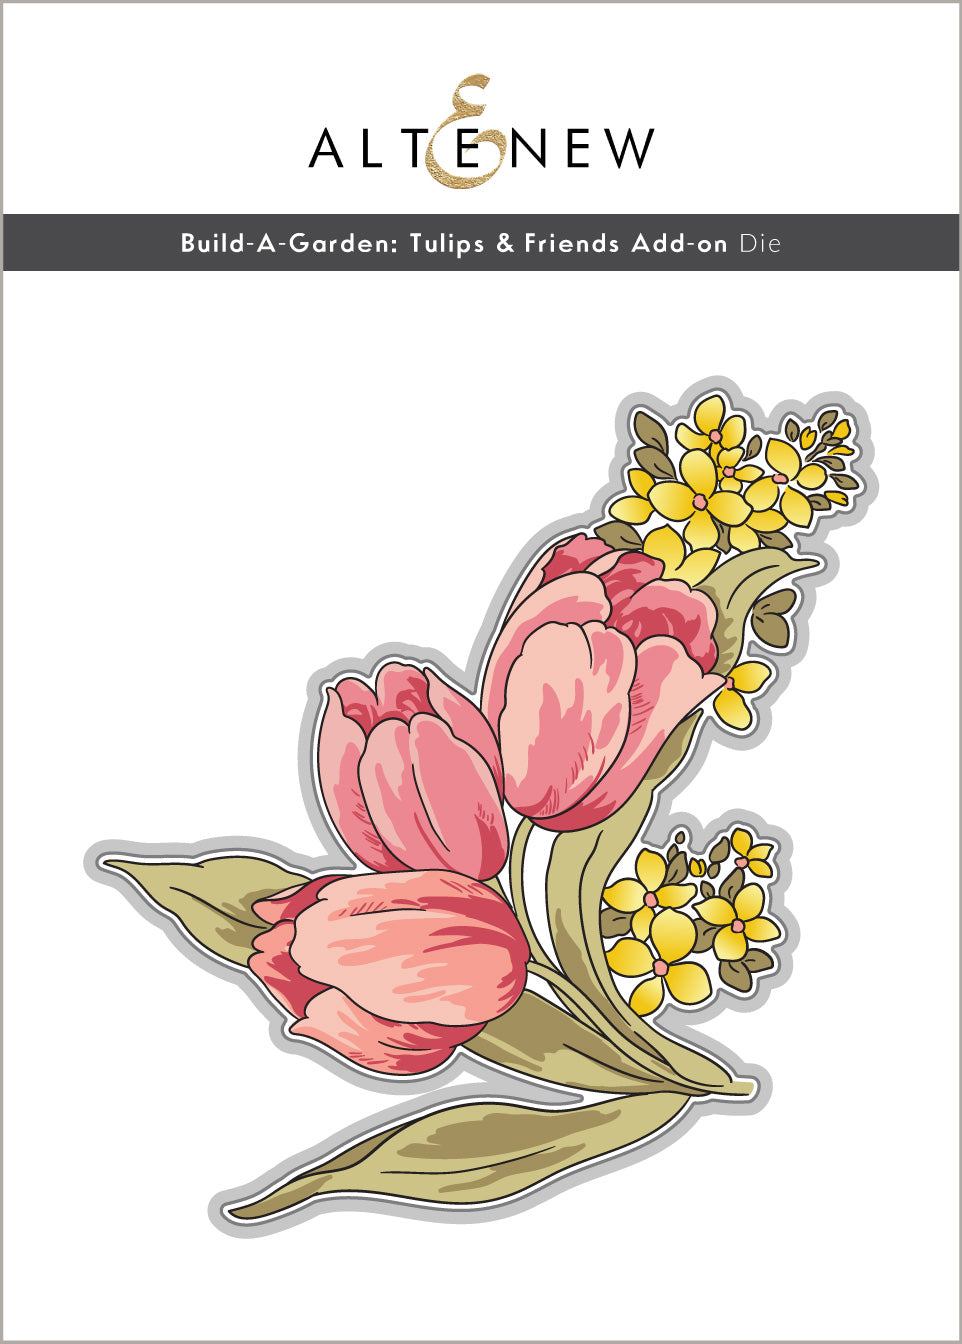 Dies Build-A-Garden: Tulips & Friends Add-on Die